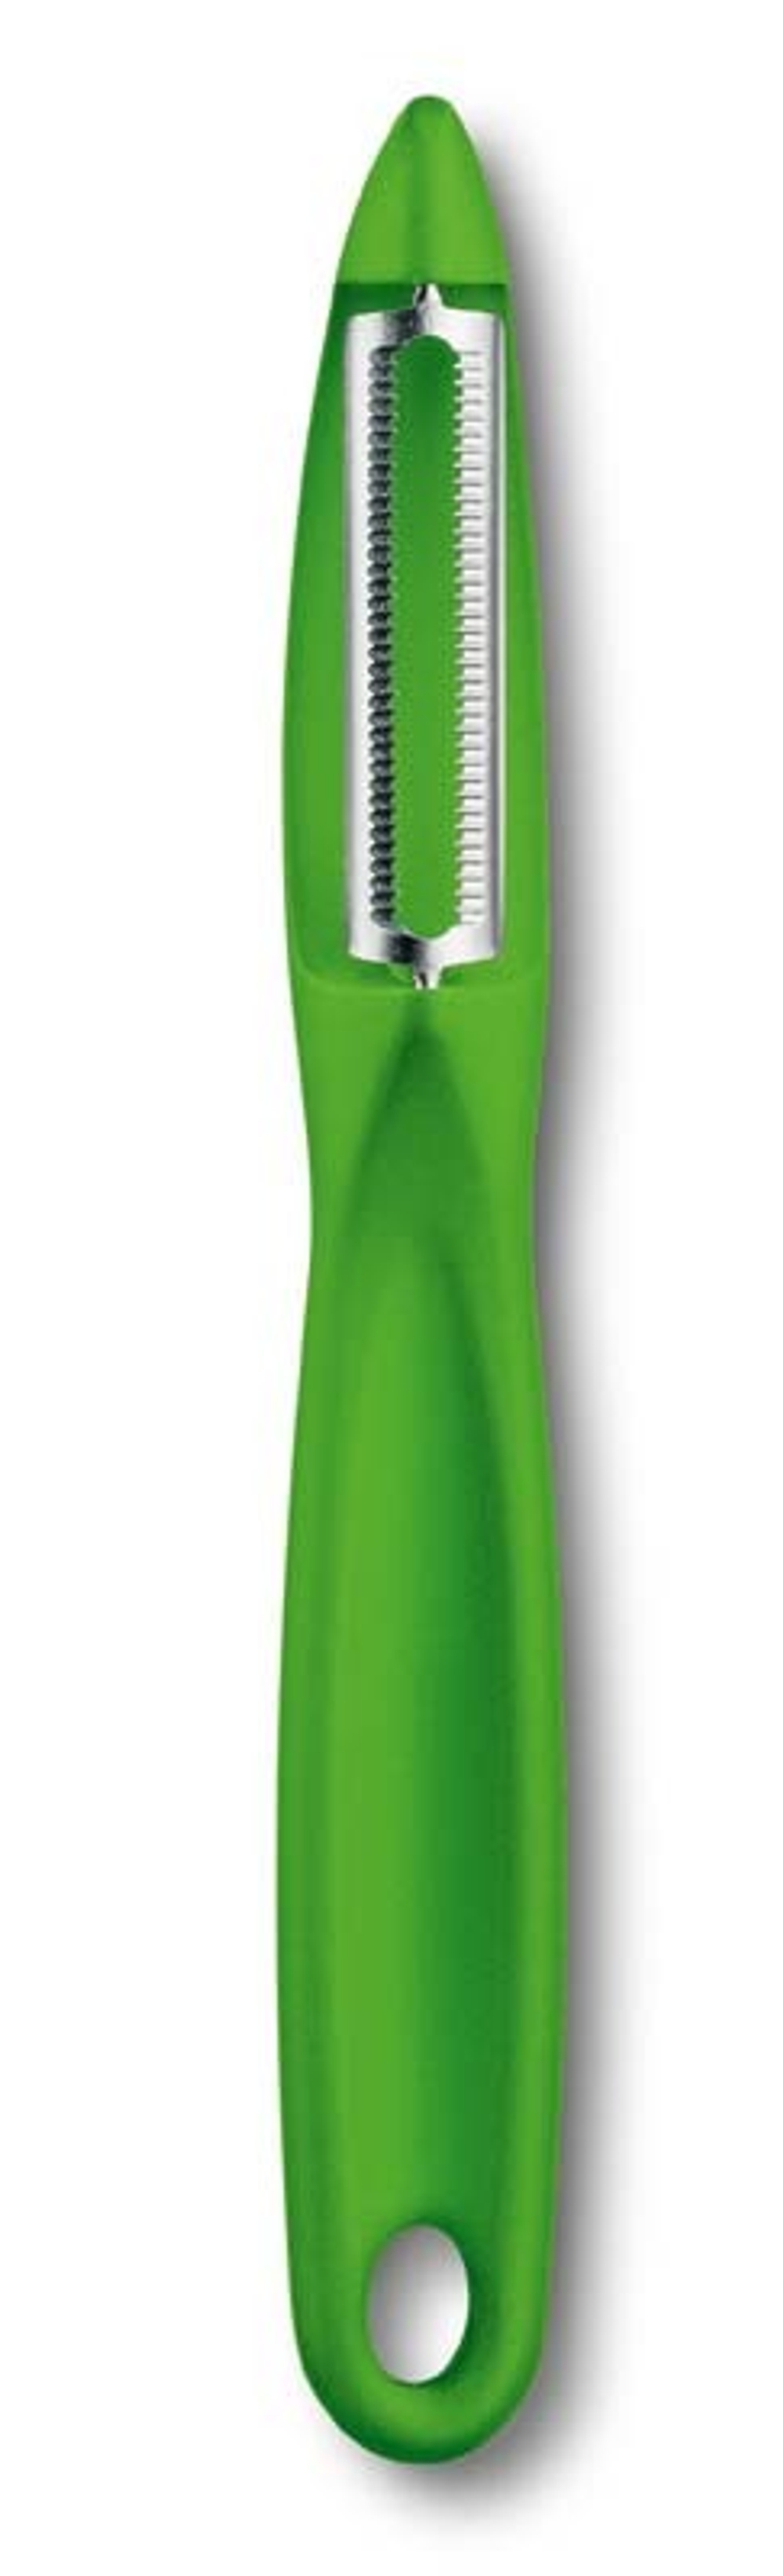 Фото  овощечистка VICTORINOX универсальная двустороннее зубчатое лезвие из нержавеющей стали зелёная пластиковая рукоять с гарантией